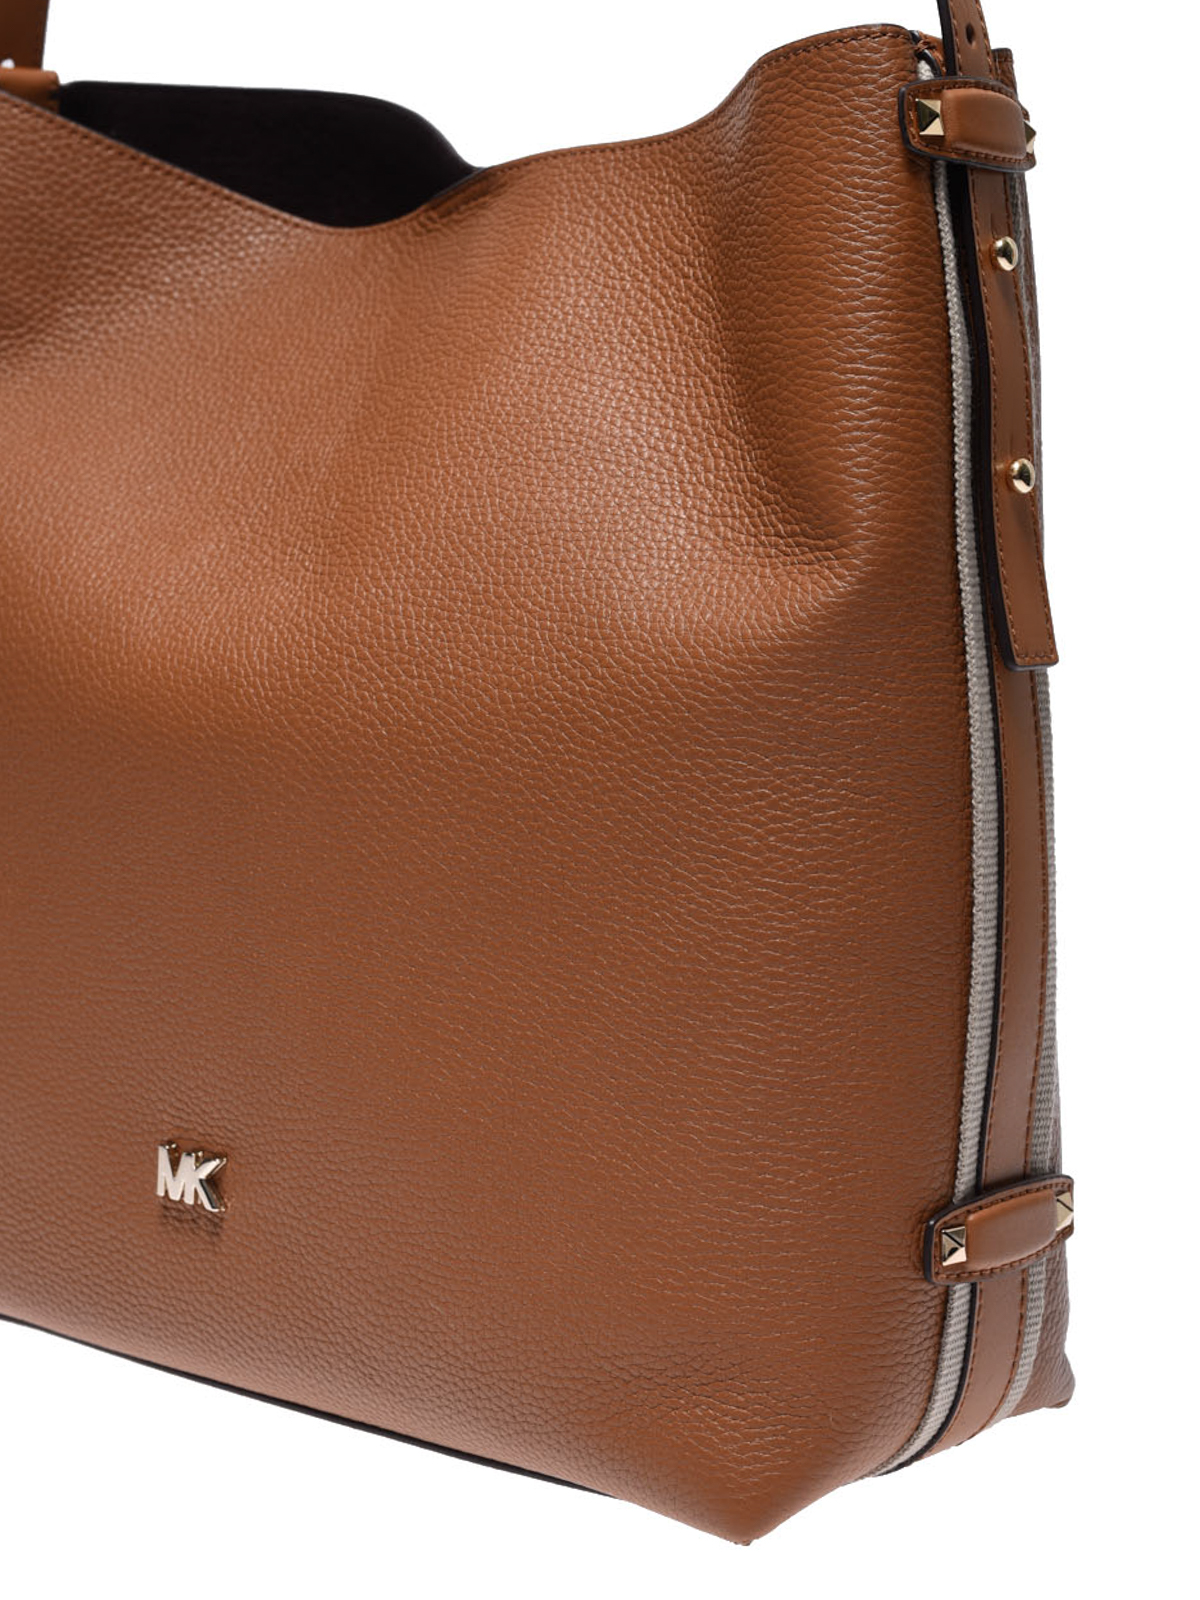 griffin large leather shoulder bag